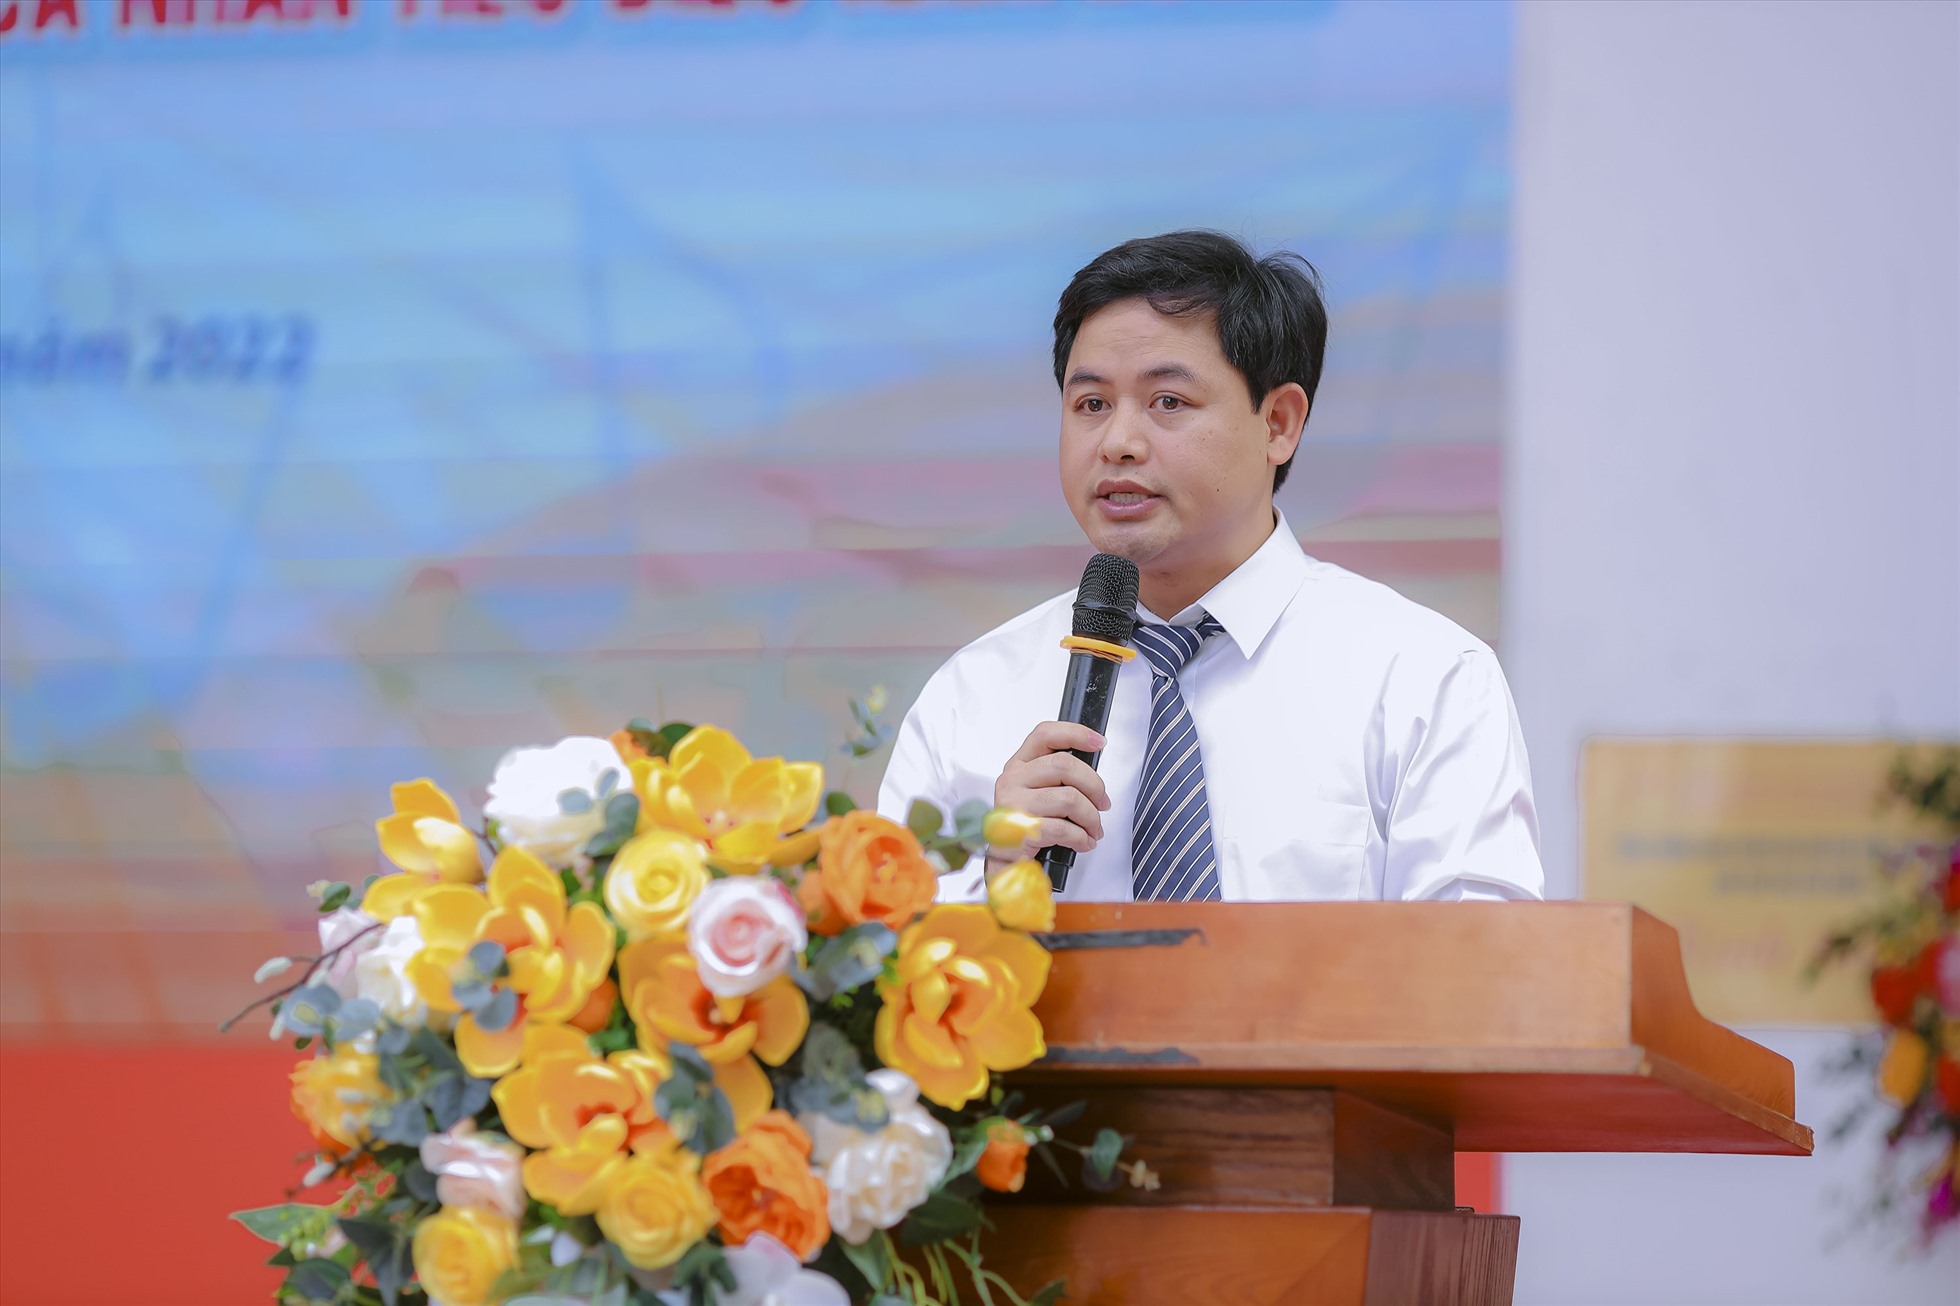 Thầy Lưu Văn Thông, Hiệu trưởng trường THCS Dịch Vọng chia sẻ trong lễ kỷ niệm ngày Nhà giáo Việt Nam 20.11. Ảnh: Minh Hà